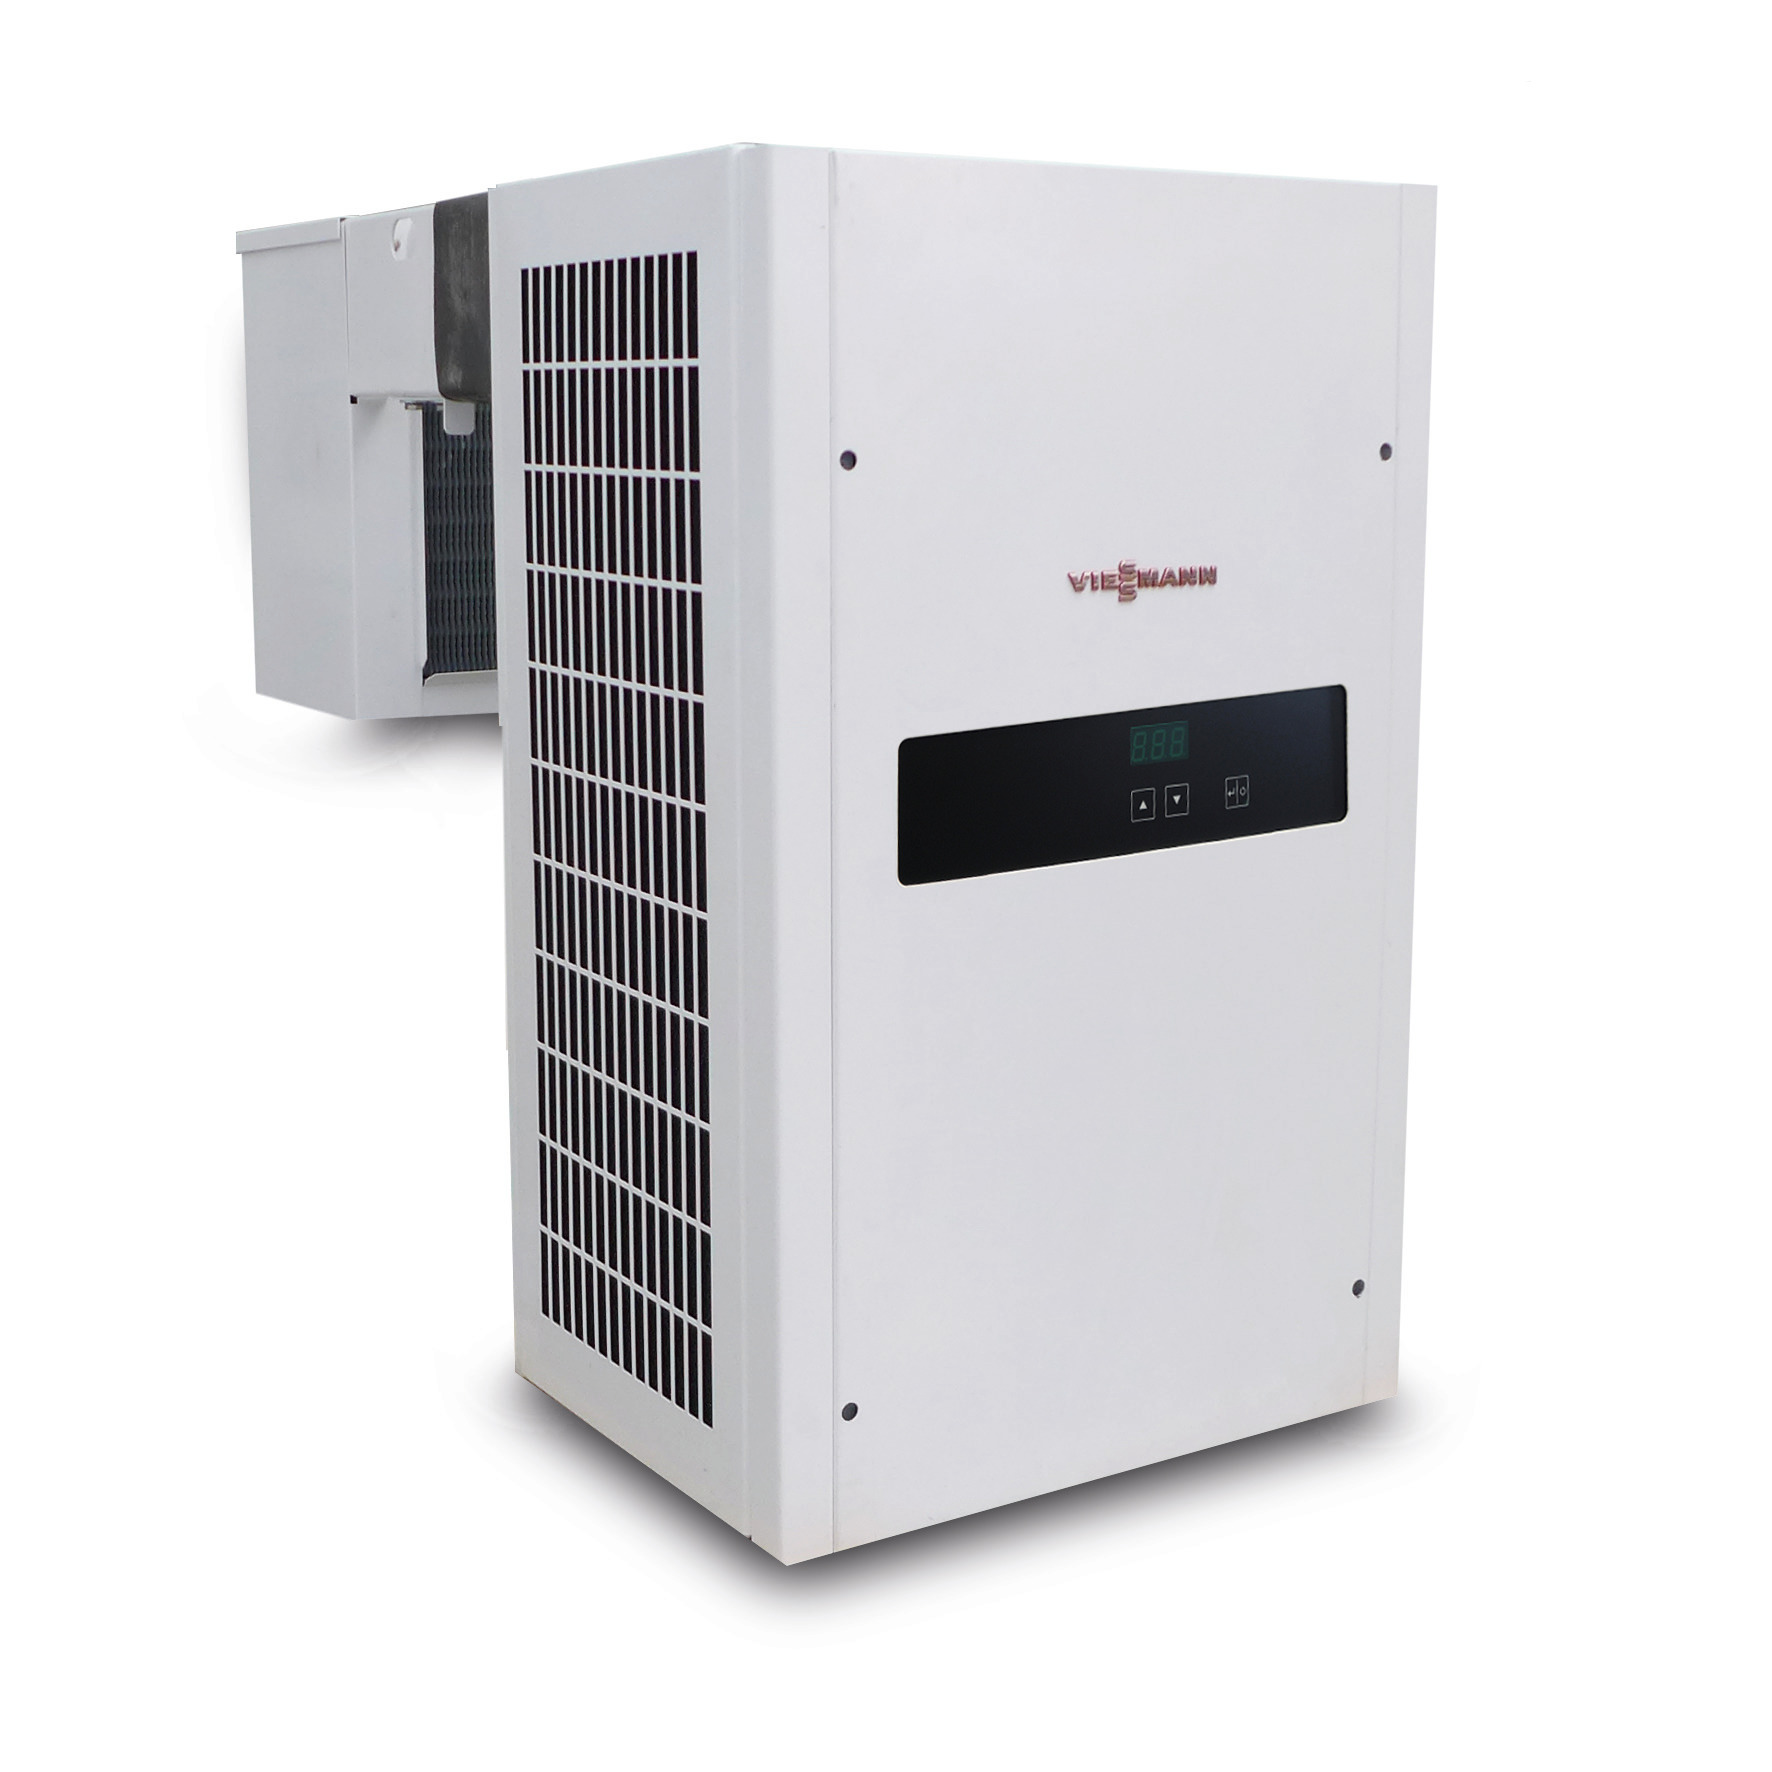 Huckepack-Kühlaggregat 1,30 kW / 230 V mit elektronischer Regelung